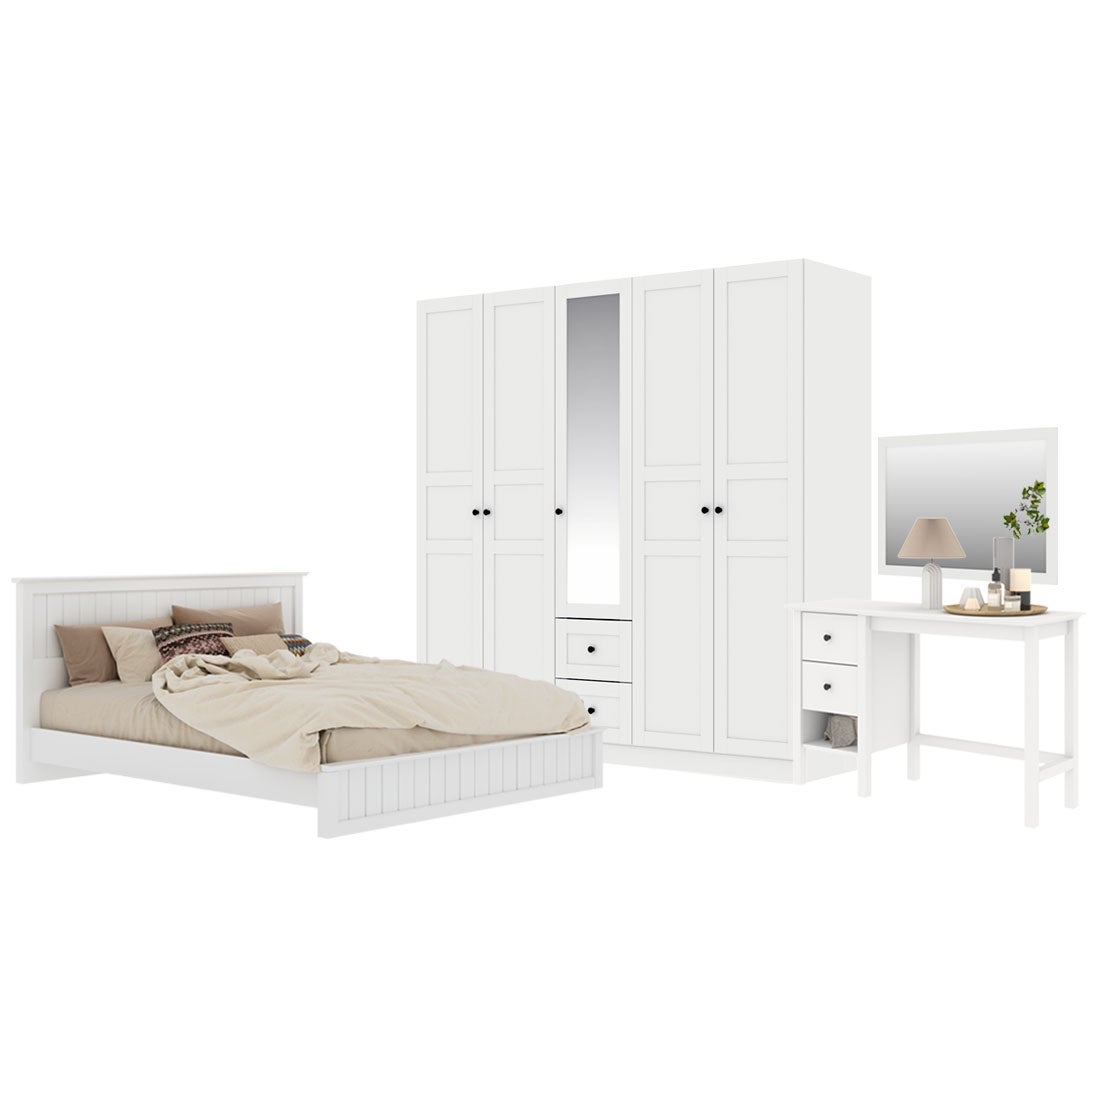 ชุดห้องนอน ขนาด 5 ฟุต รุ่น Moneta & ตู้บานเปิด 200 ซม. สีขาว01